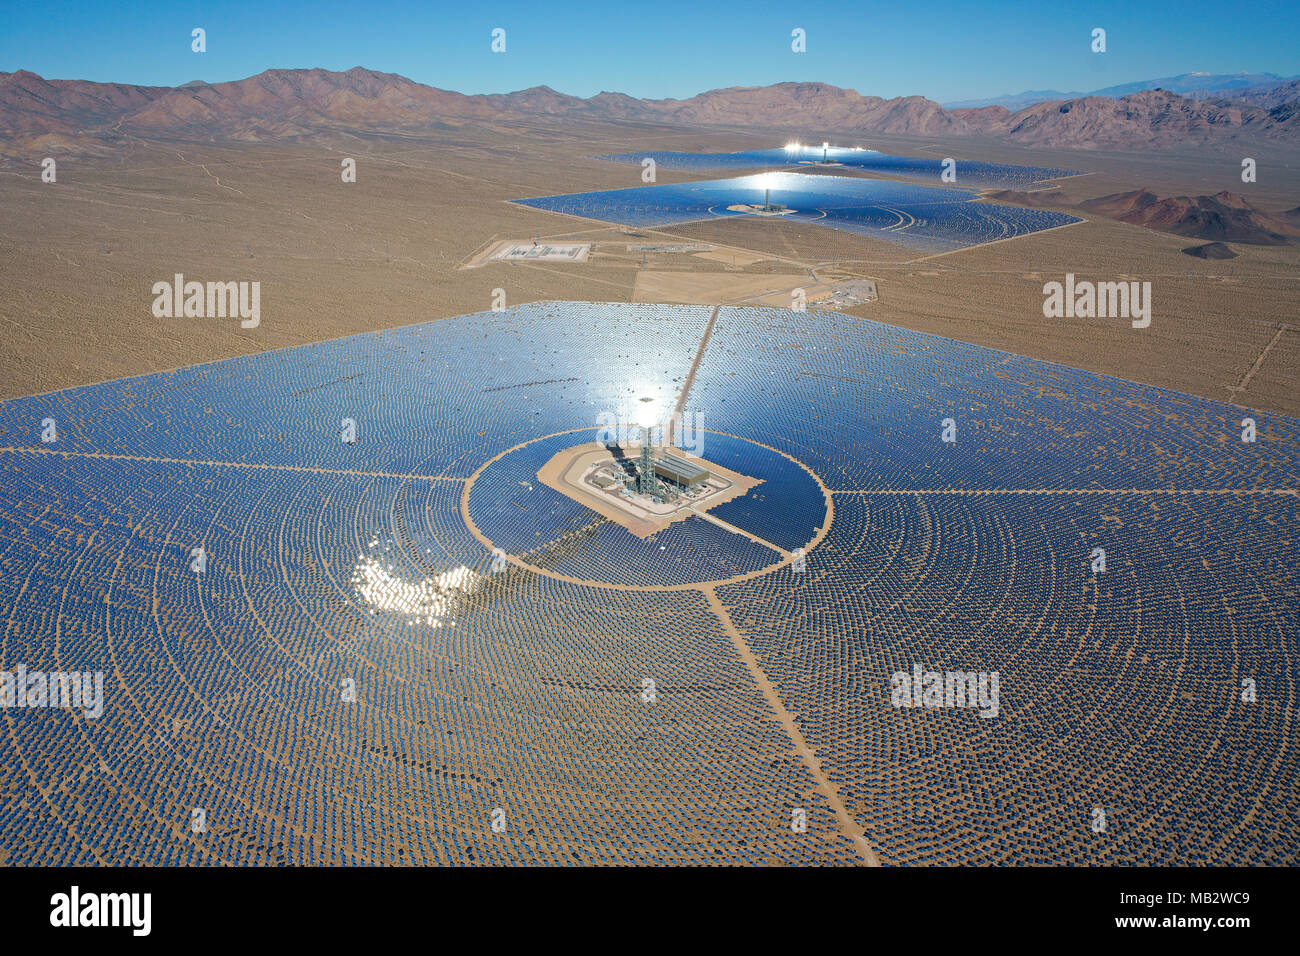 LUFTAUFNAHME. Ivanpah Solar Electric Generating System (weltweit größtes konzentriertes Solarkraftwerk ab 2018). Mojave Desert, Kalifornien, USA. Stockfoto